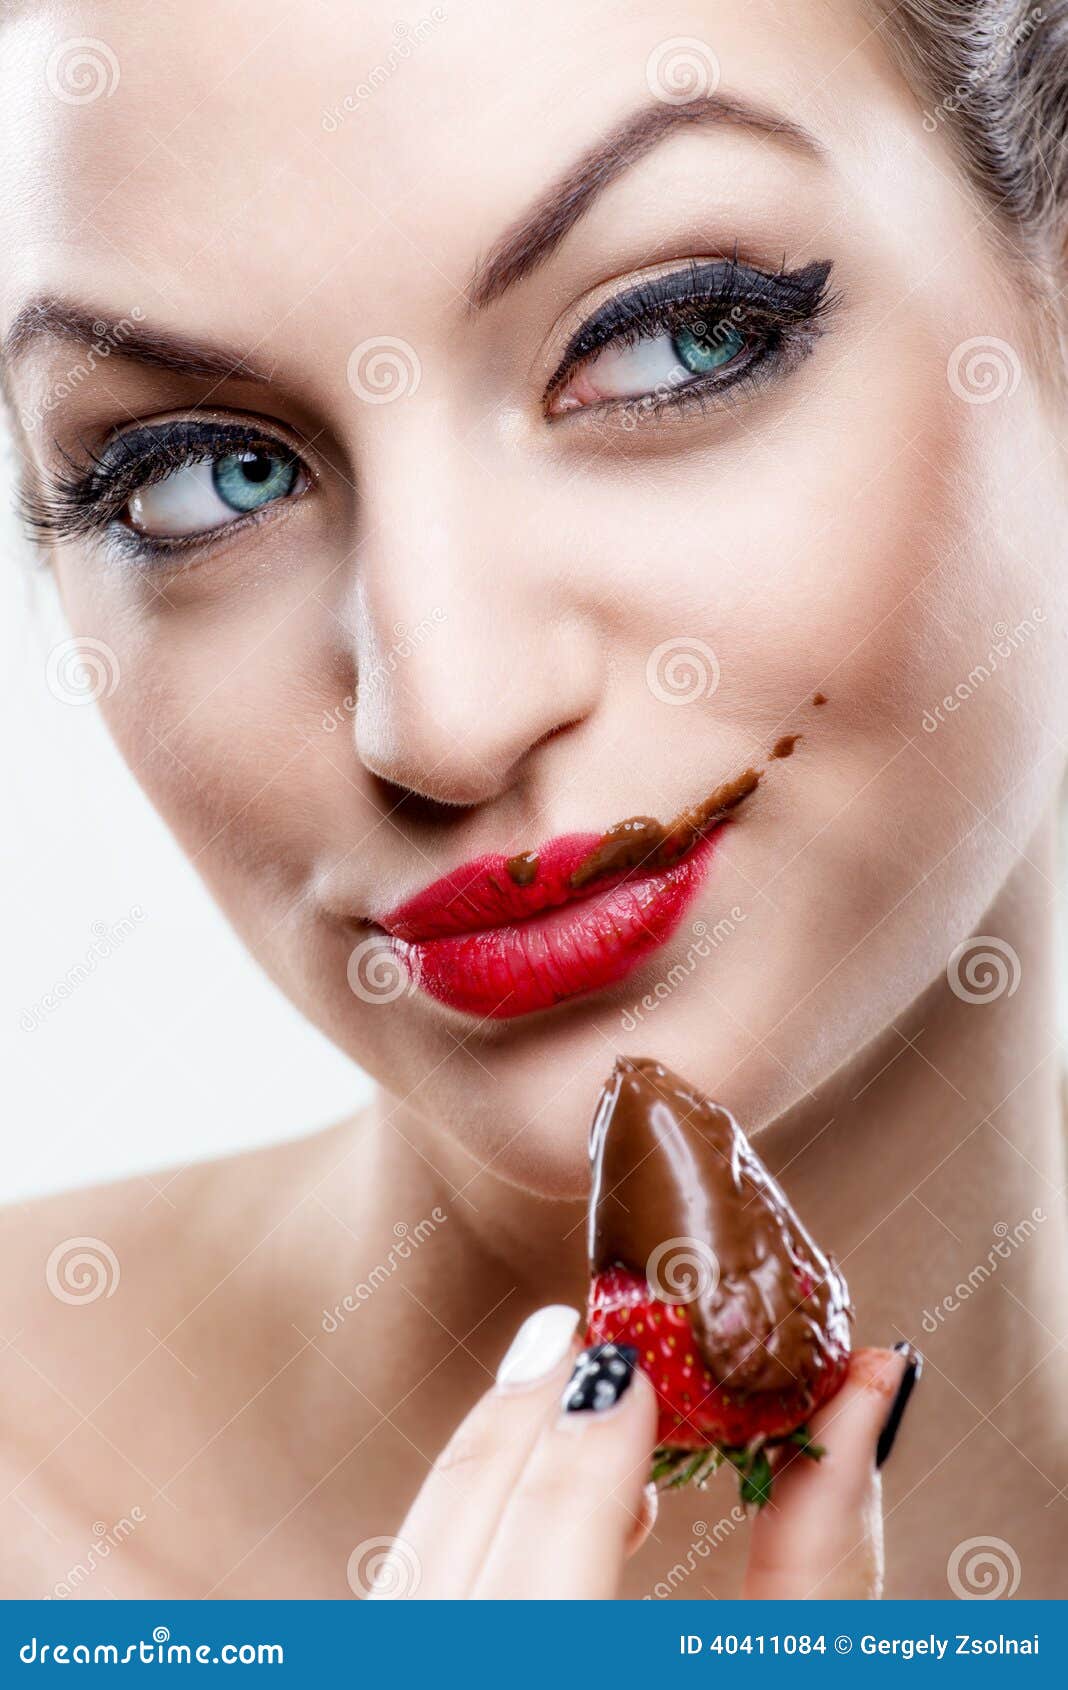 ÃÂ ÃÂ  seduction - attractive woman eating a strawberry, chocolate became the face of it